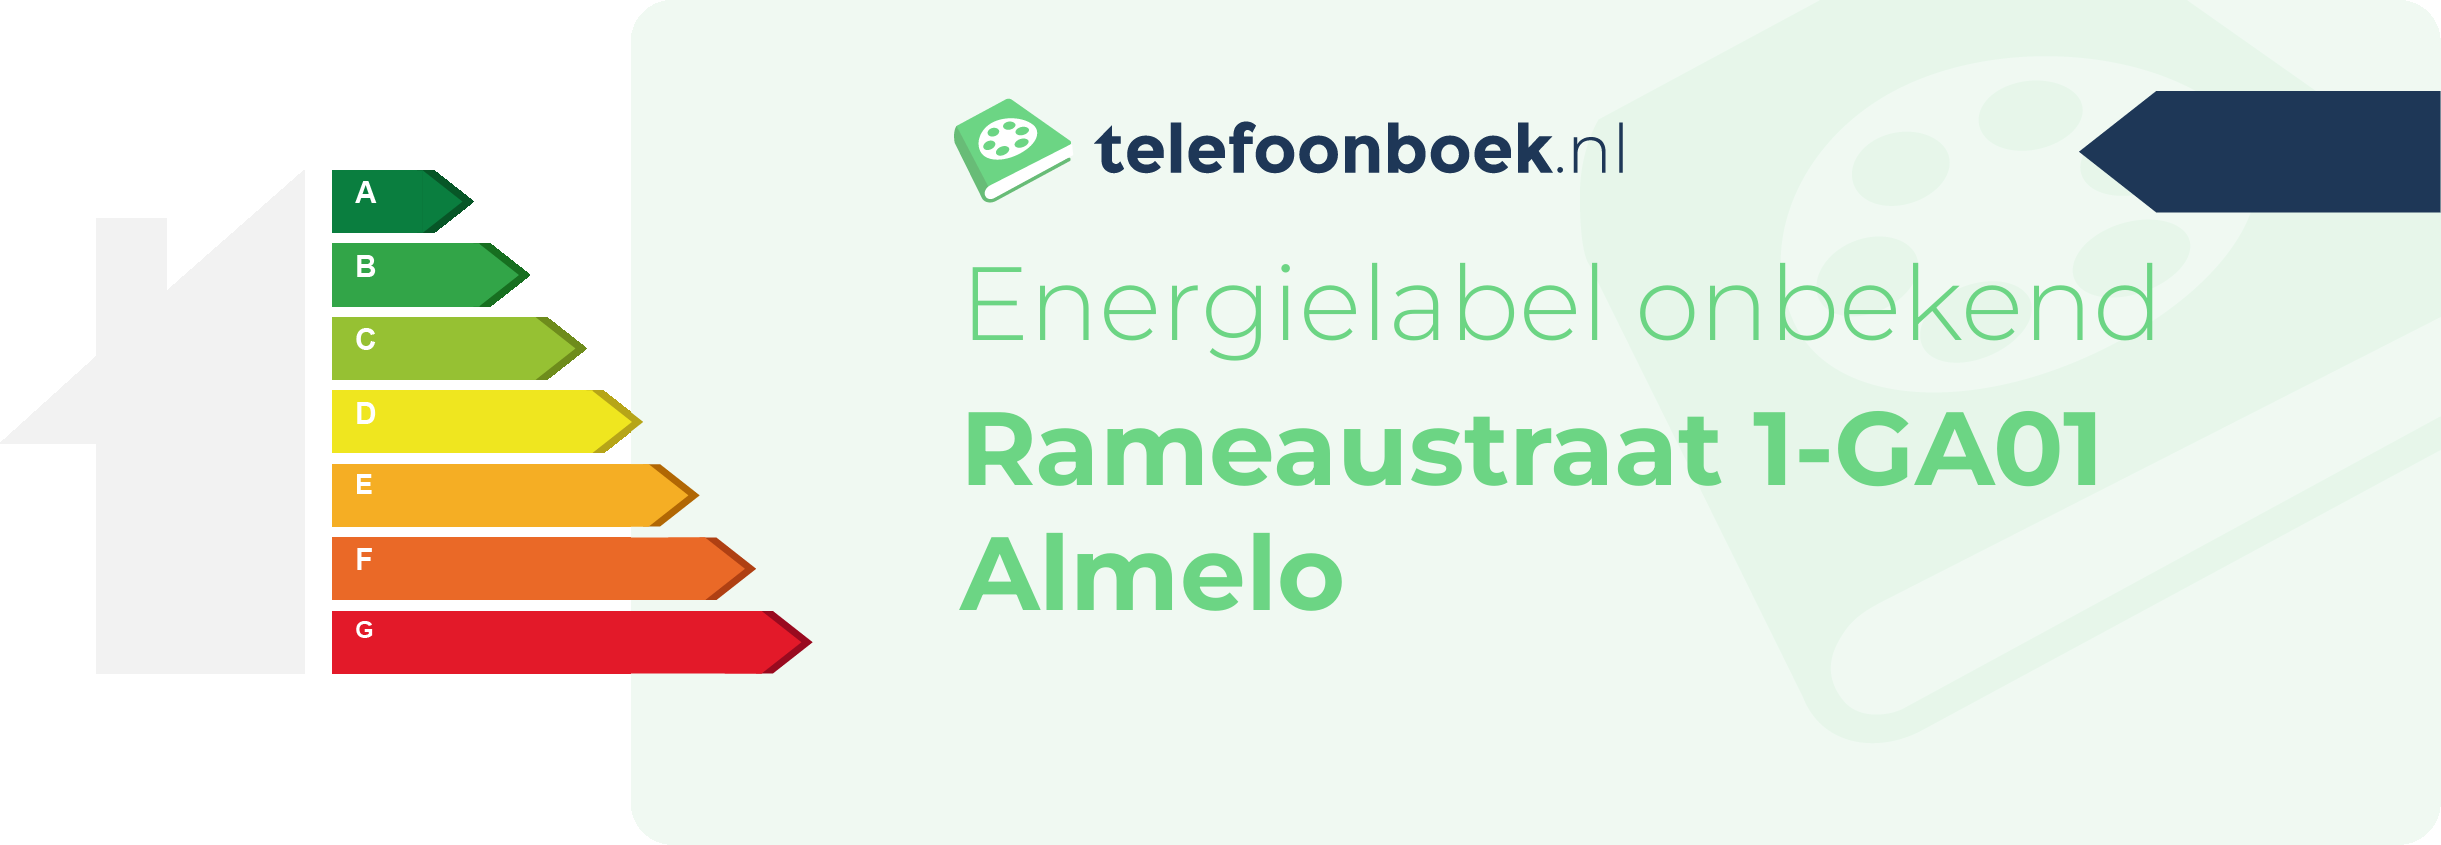 Energielabel Rameaustraat 1-GA01 Almelo